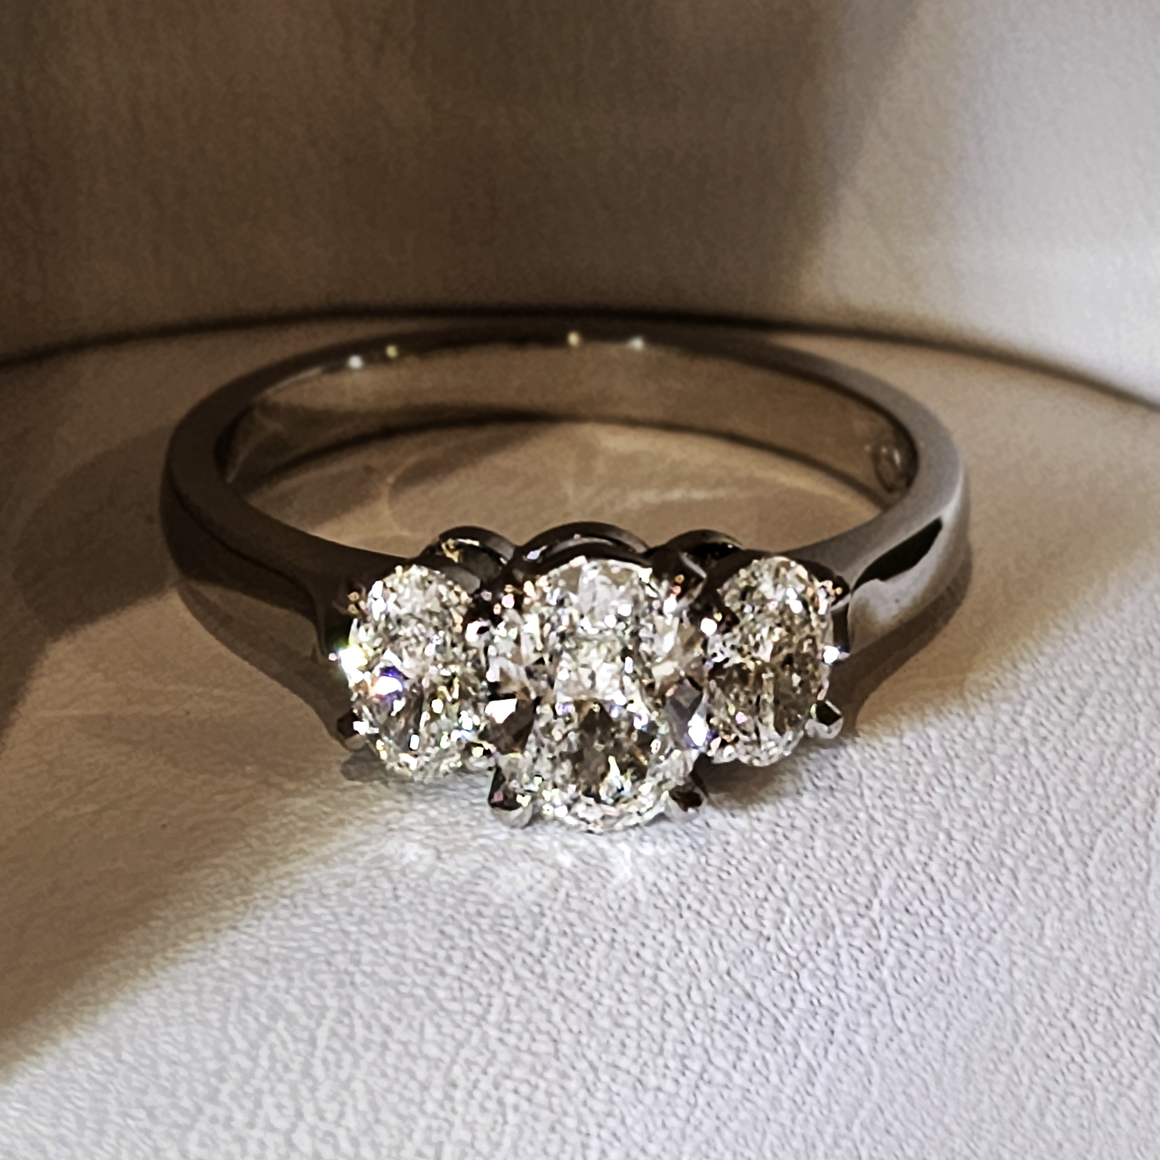 Oval Diamond Ring